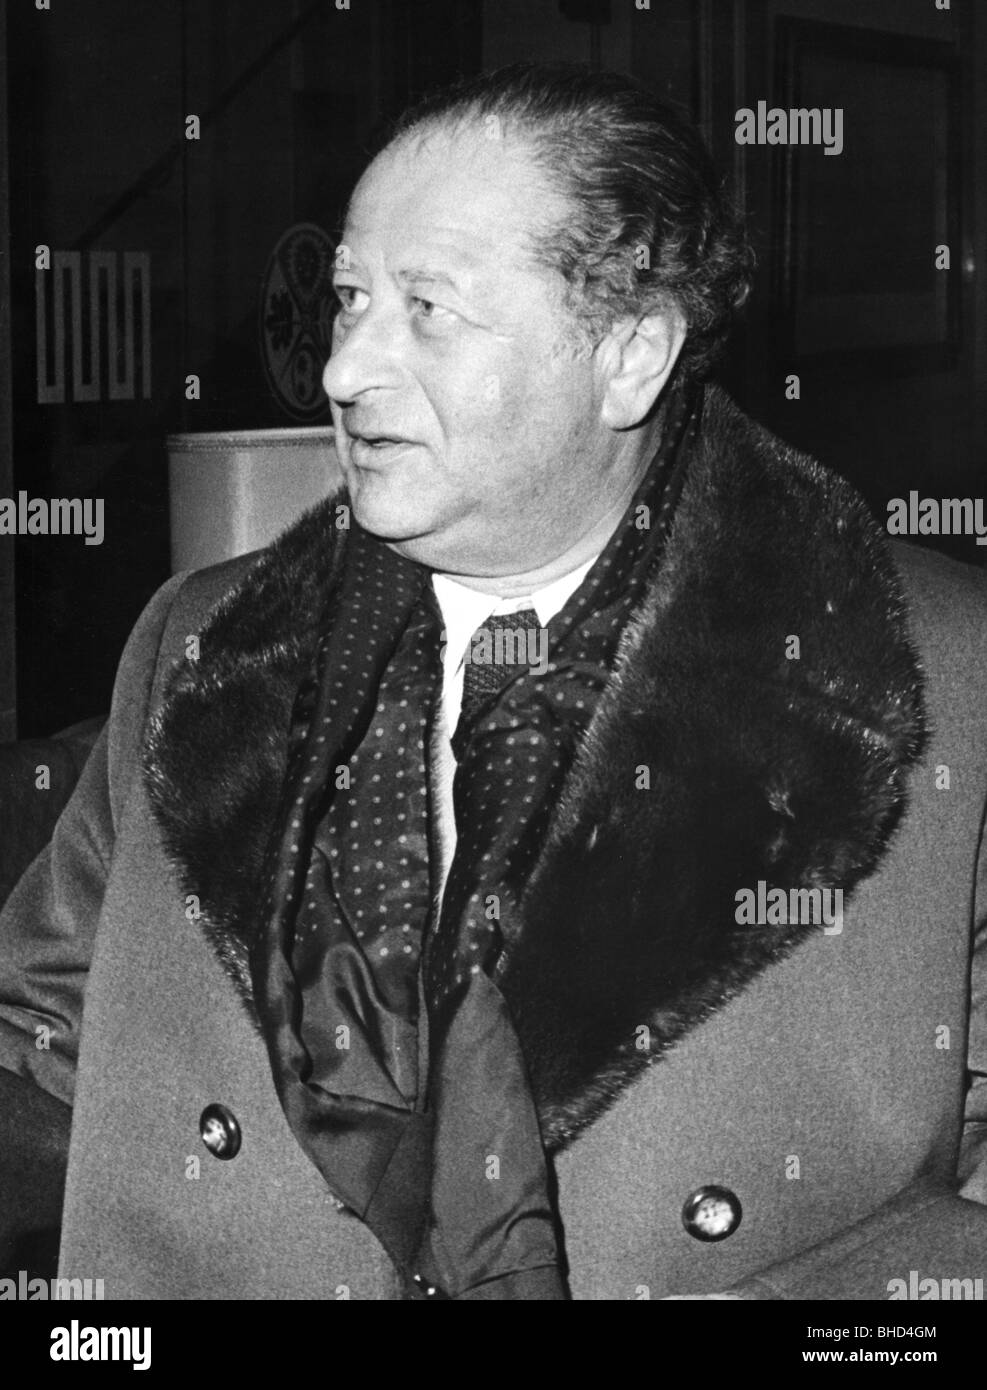 Kreisky, Bruno, 22.1.1911 - 29 7.1990, österreichischer Politiker (Sozialdemokrat), Bundeskanzler von Österreich 1970 - 1983, halbe Länge, 1975, Stockfoto